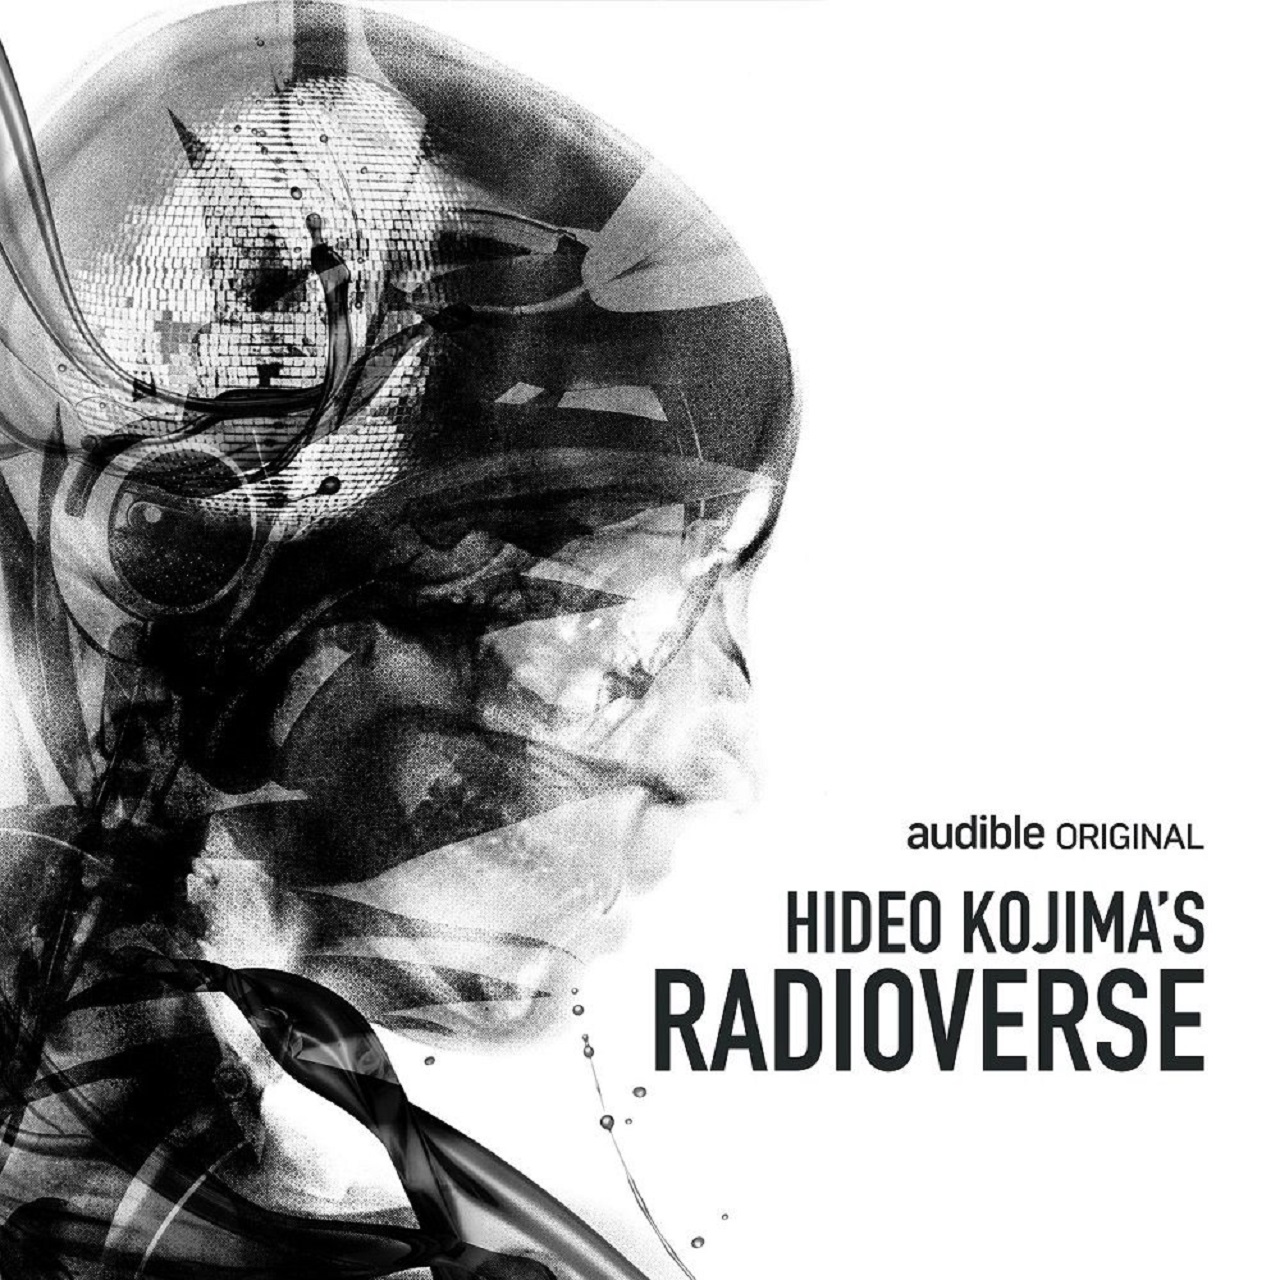 Hideo Kojima started a new podcast called HIDEO KOJIMA’S RADIOVERSE